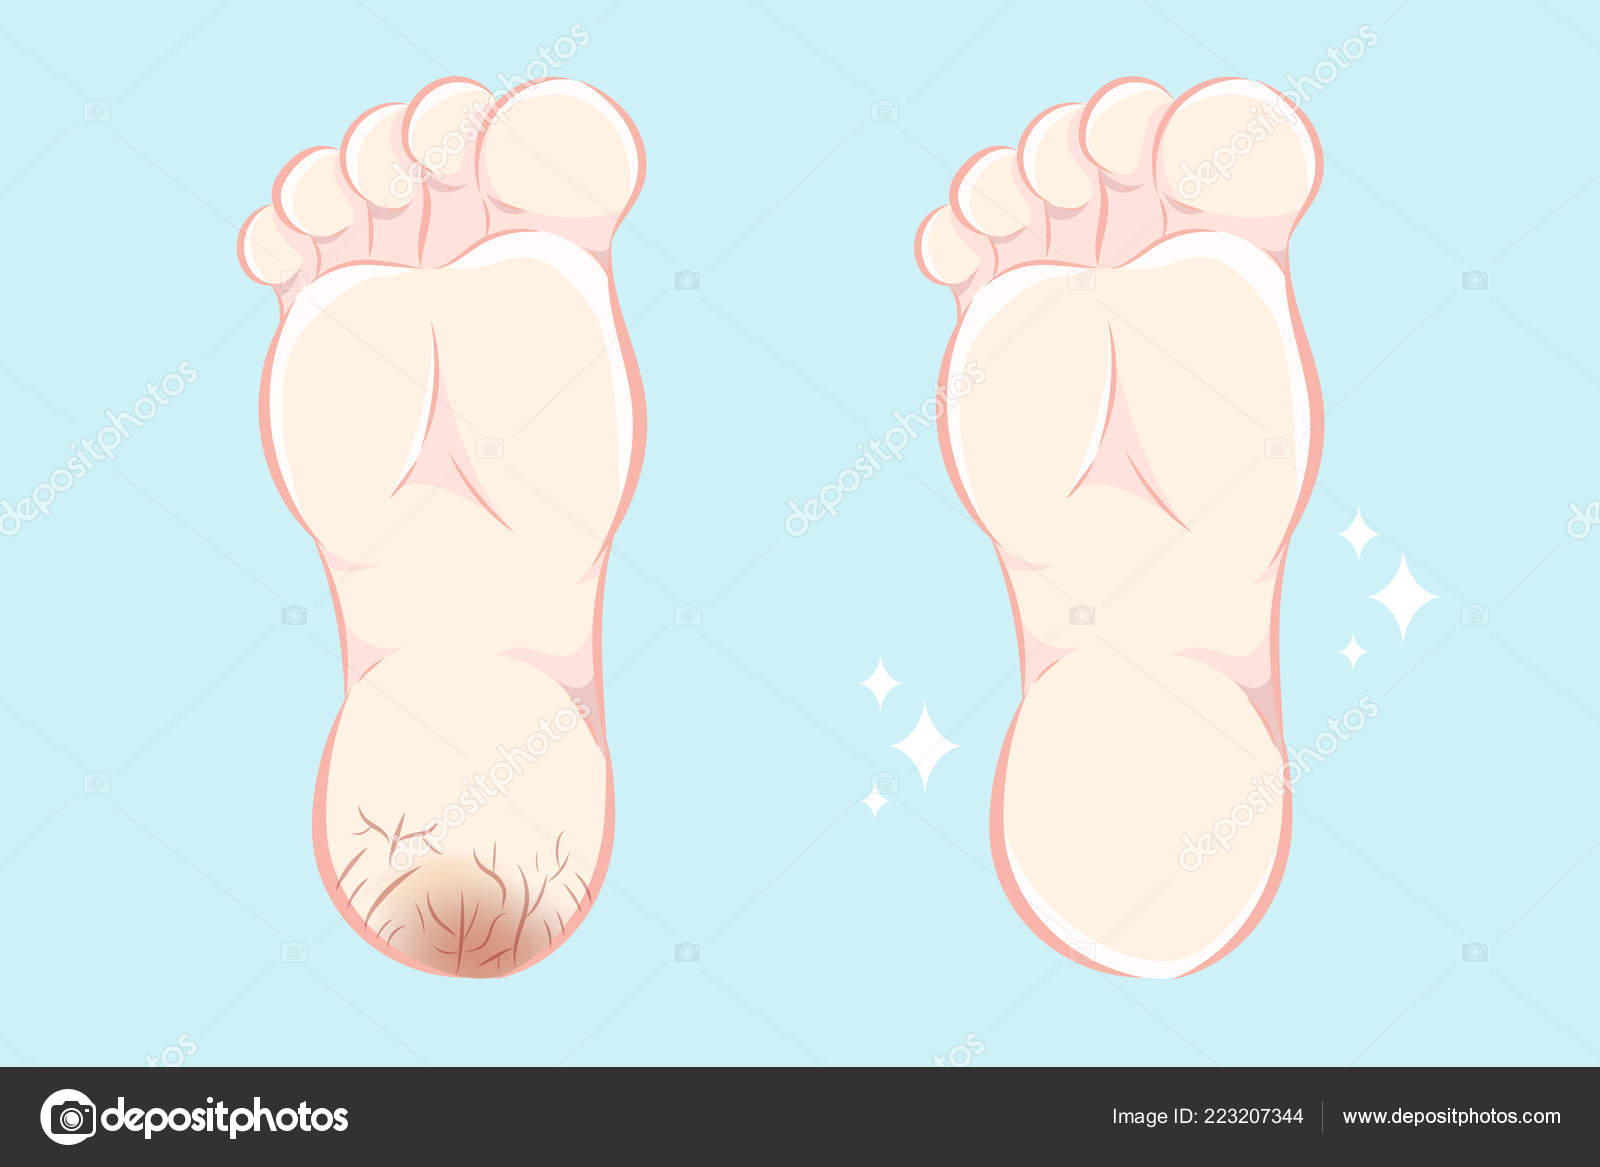 Cartoon feet Vector Art Stock Images | Depositphotos